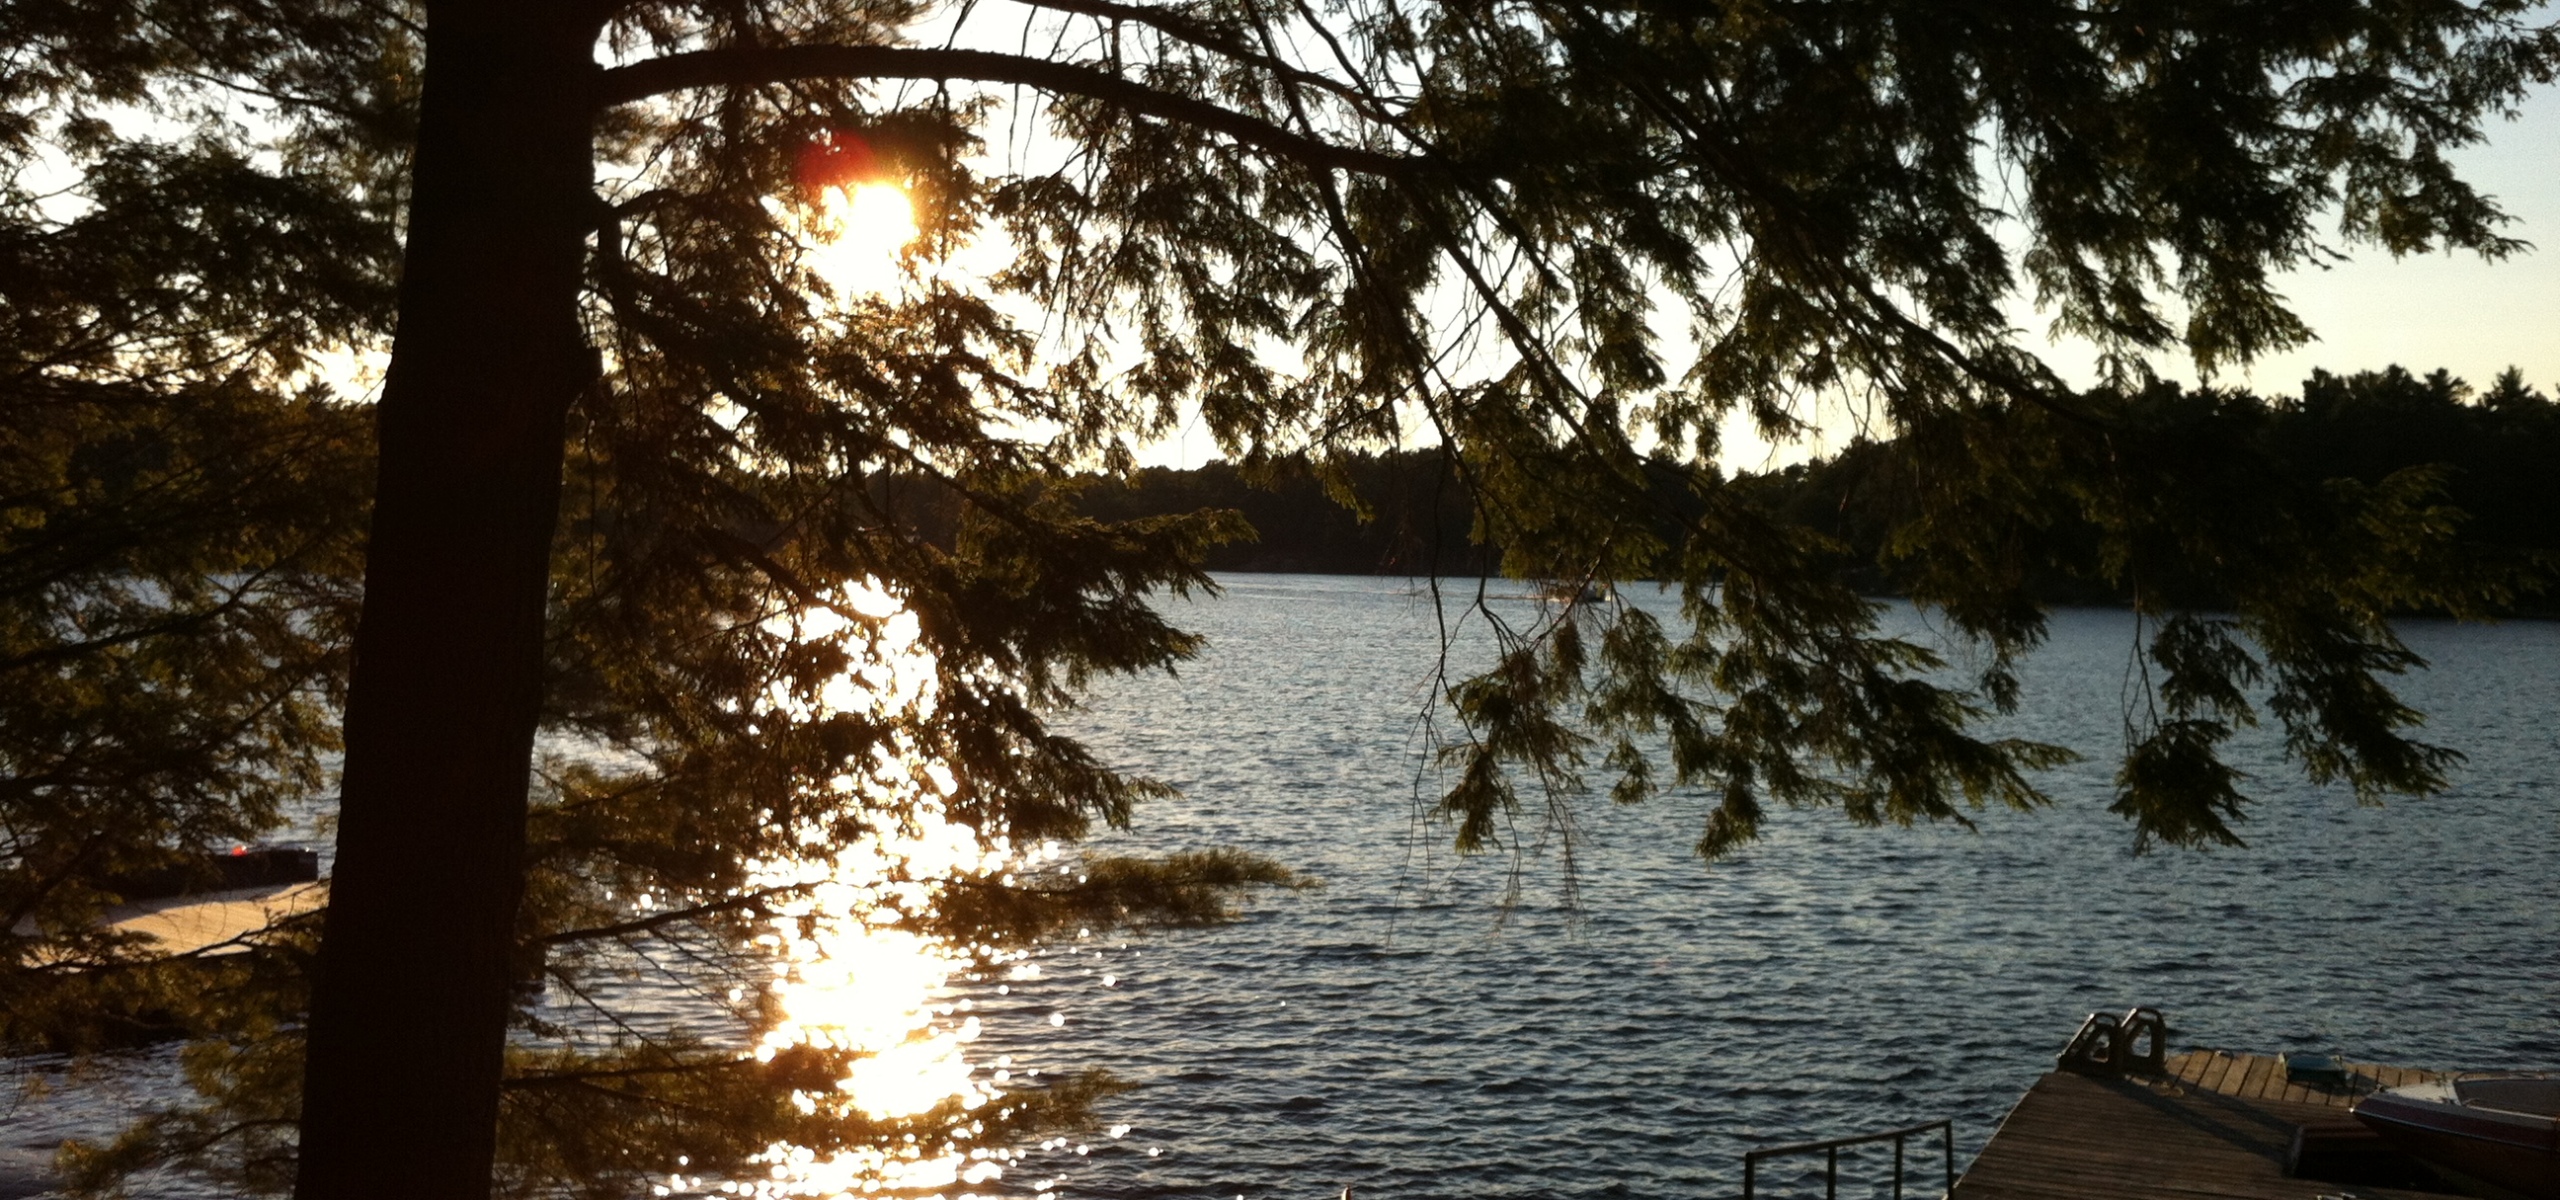 Sunset at Harris Lake